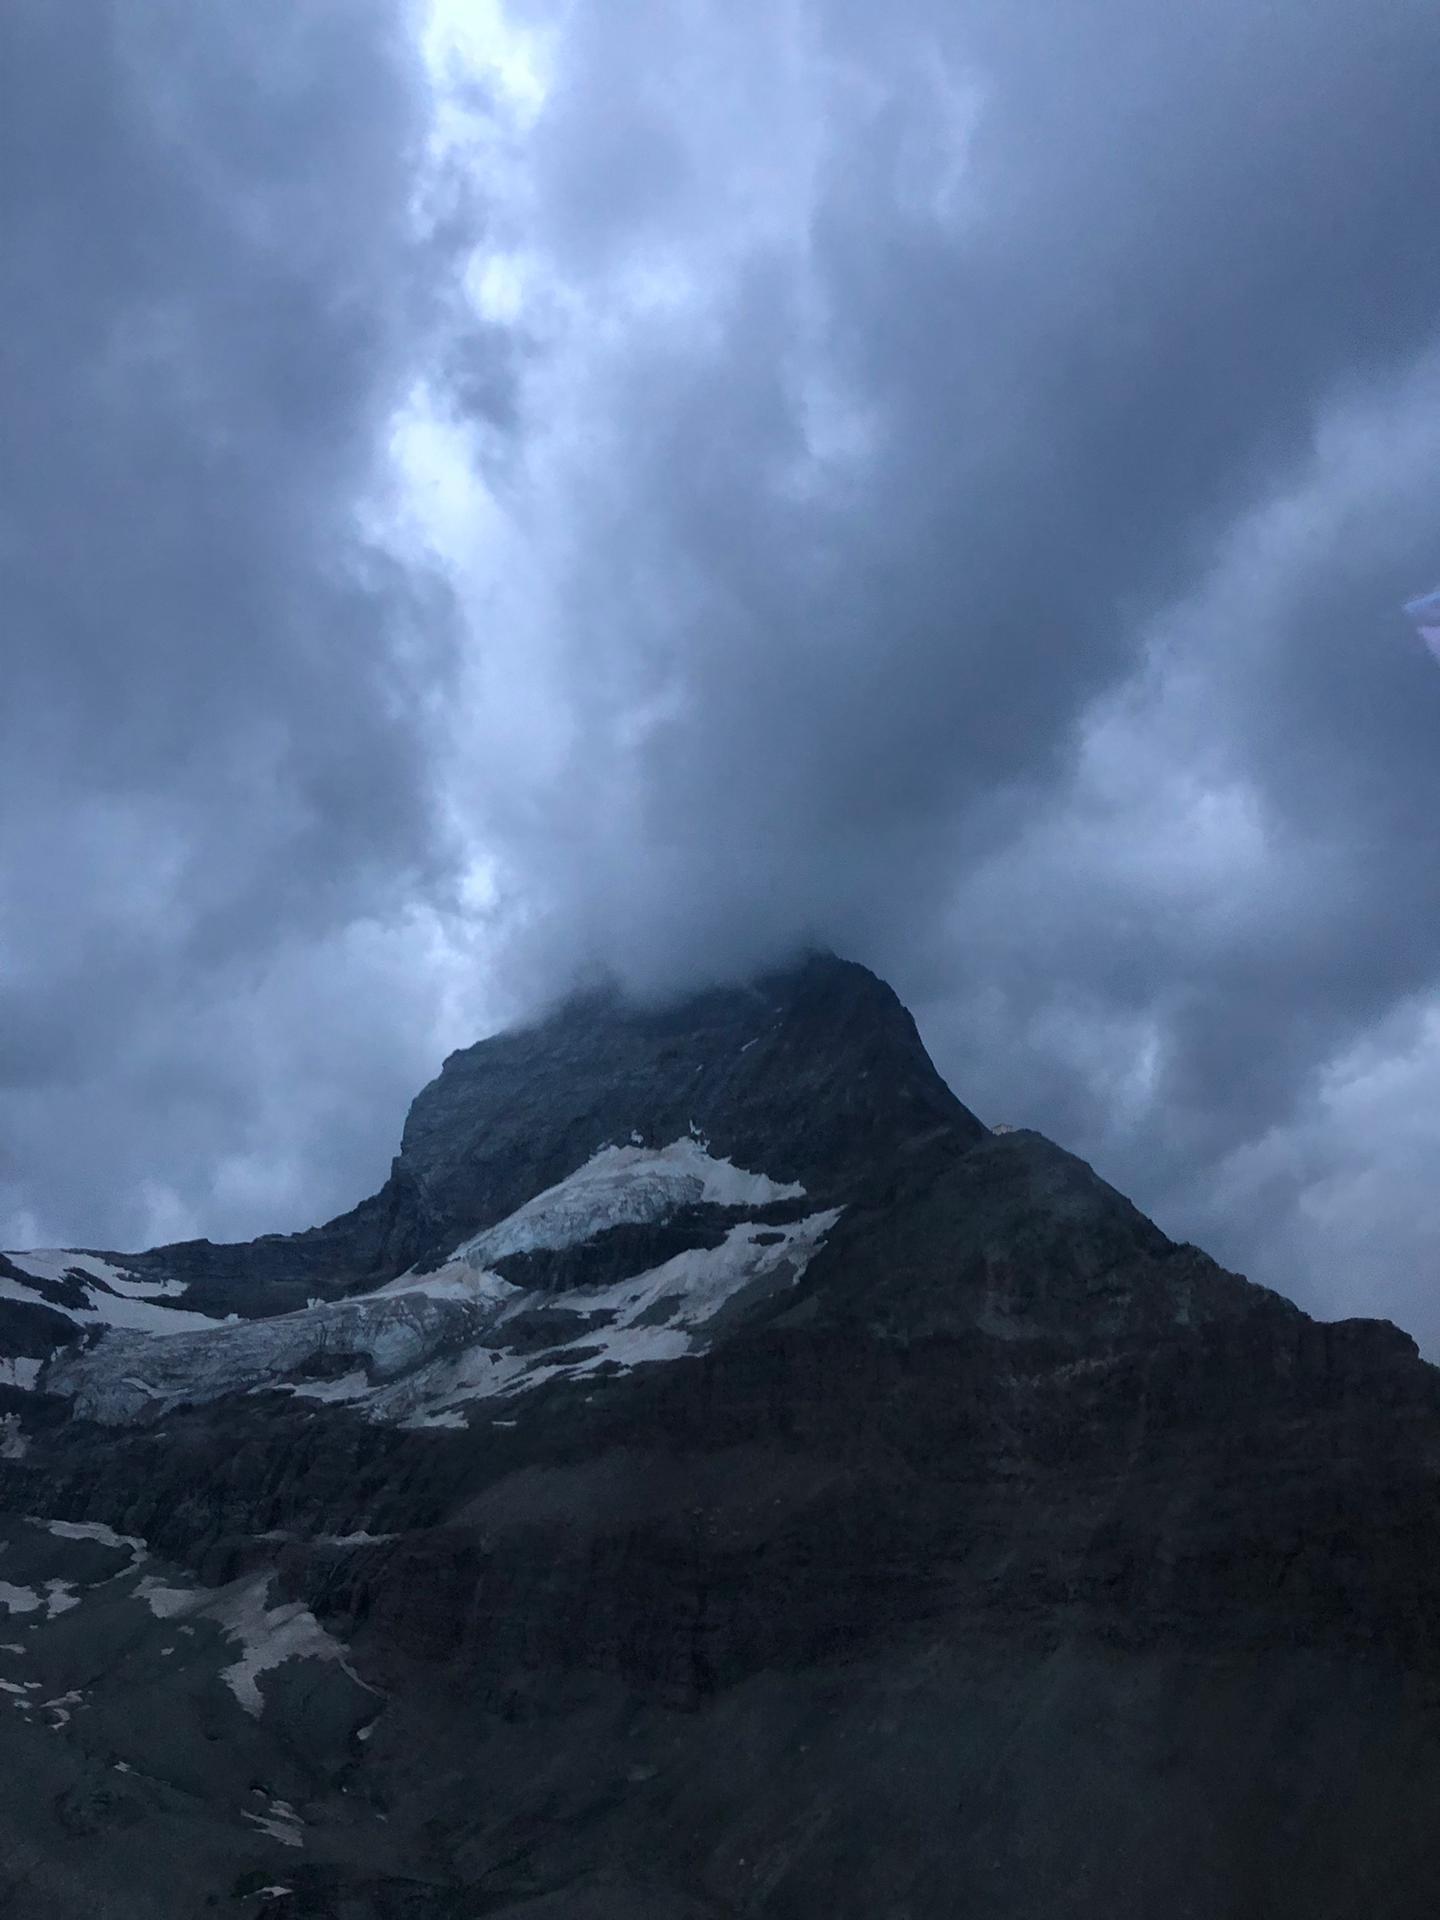 Les conditions météo et l'obscurité n'ont pas permis de secourir immédiatement les alpinistes.